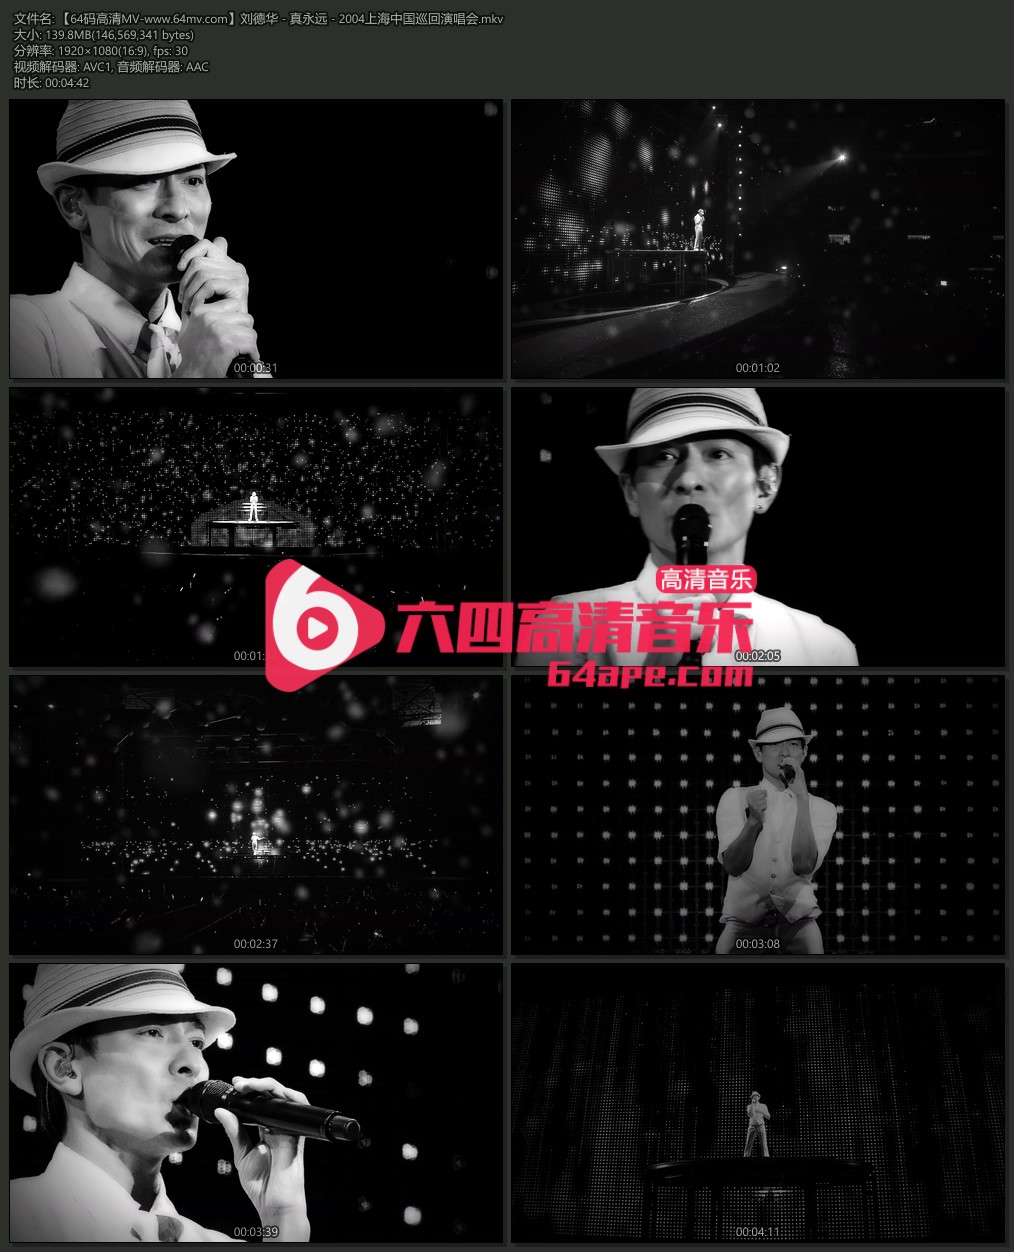 刘德华 《真永远》 2004上海中国巡回演唱会  1080P